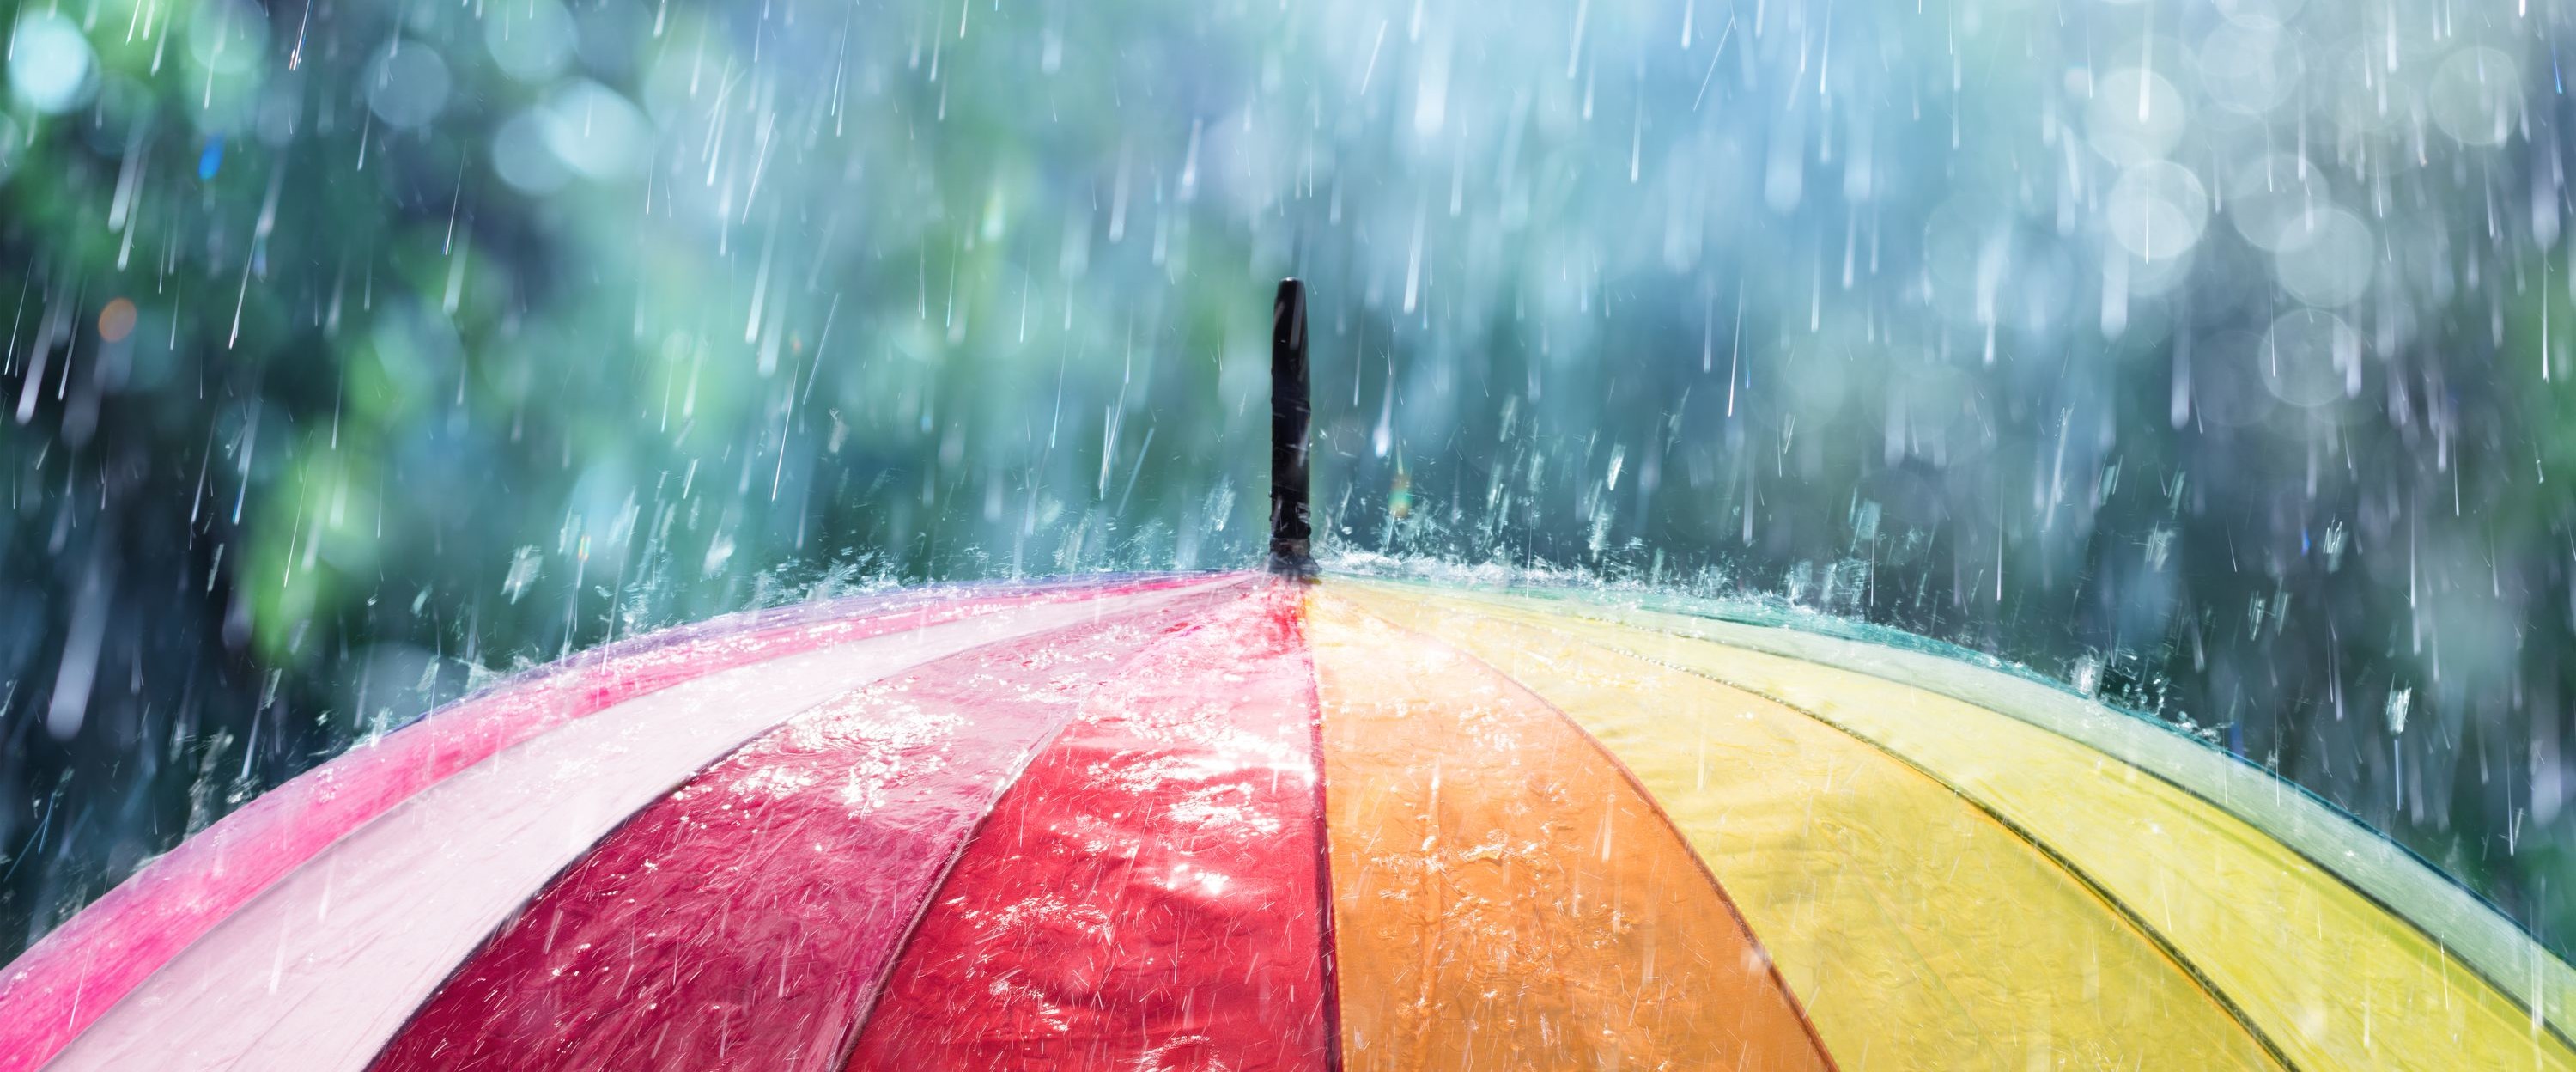 Angebot-Schlechtwetter-Regenschirm